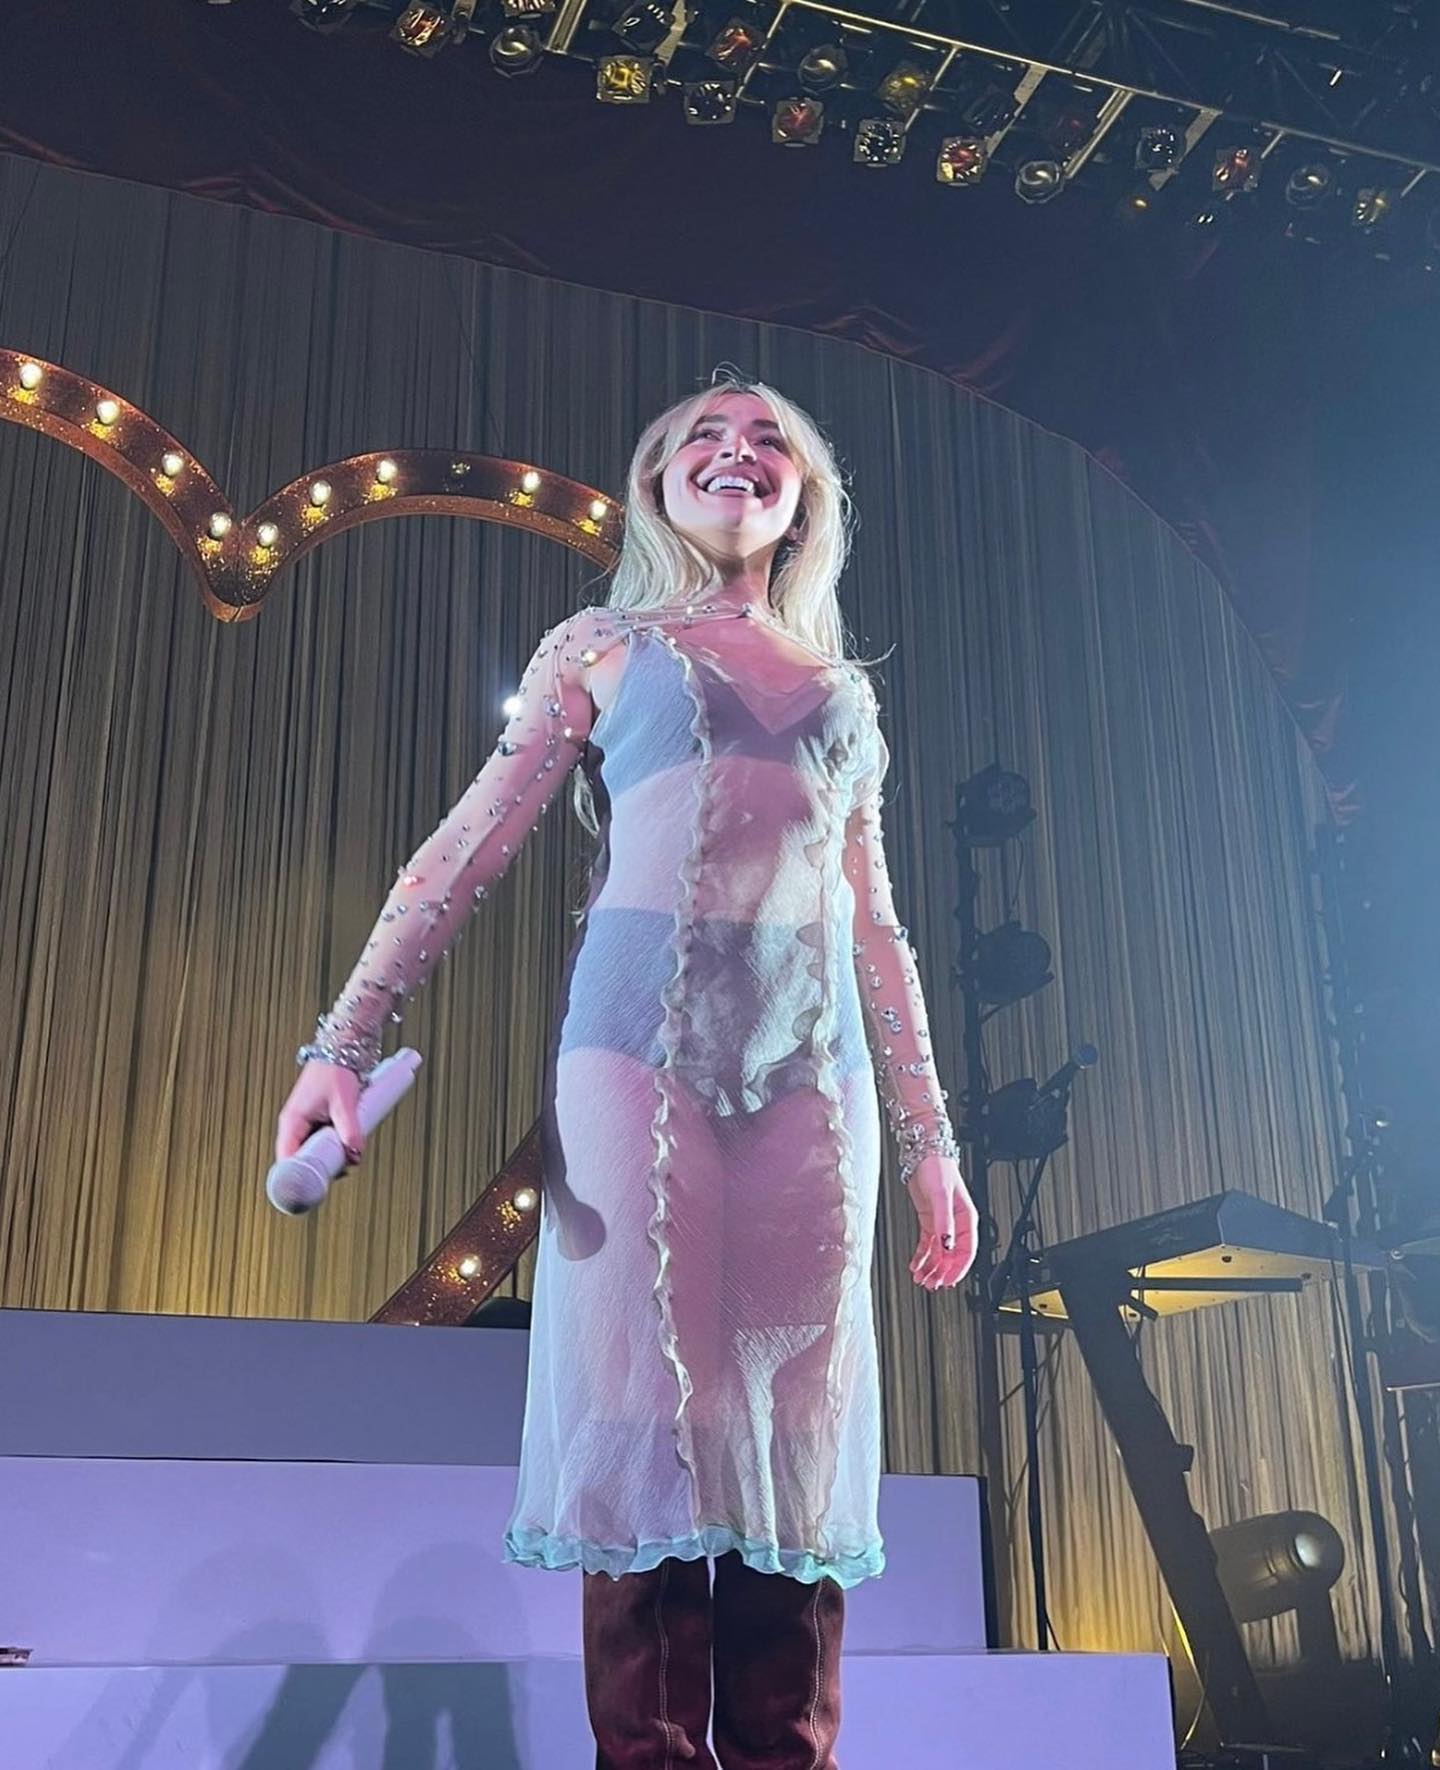 Fotos n°48 : Sabrina Carpenter da su mejor Barbie en la Semana de la Moda de Pars!